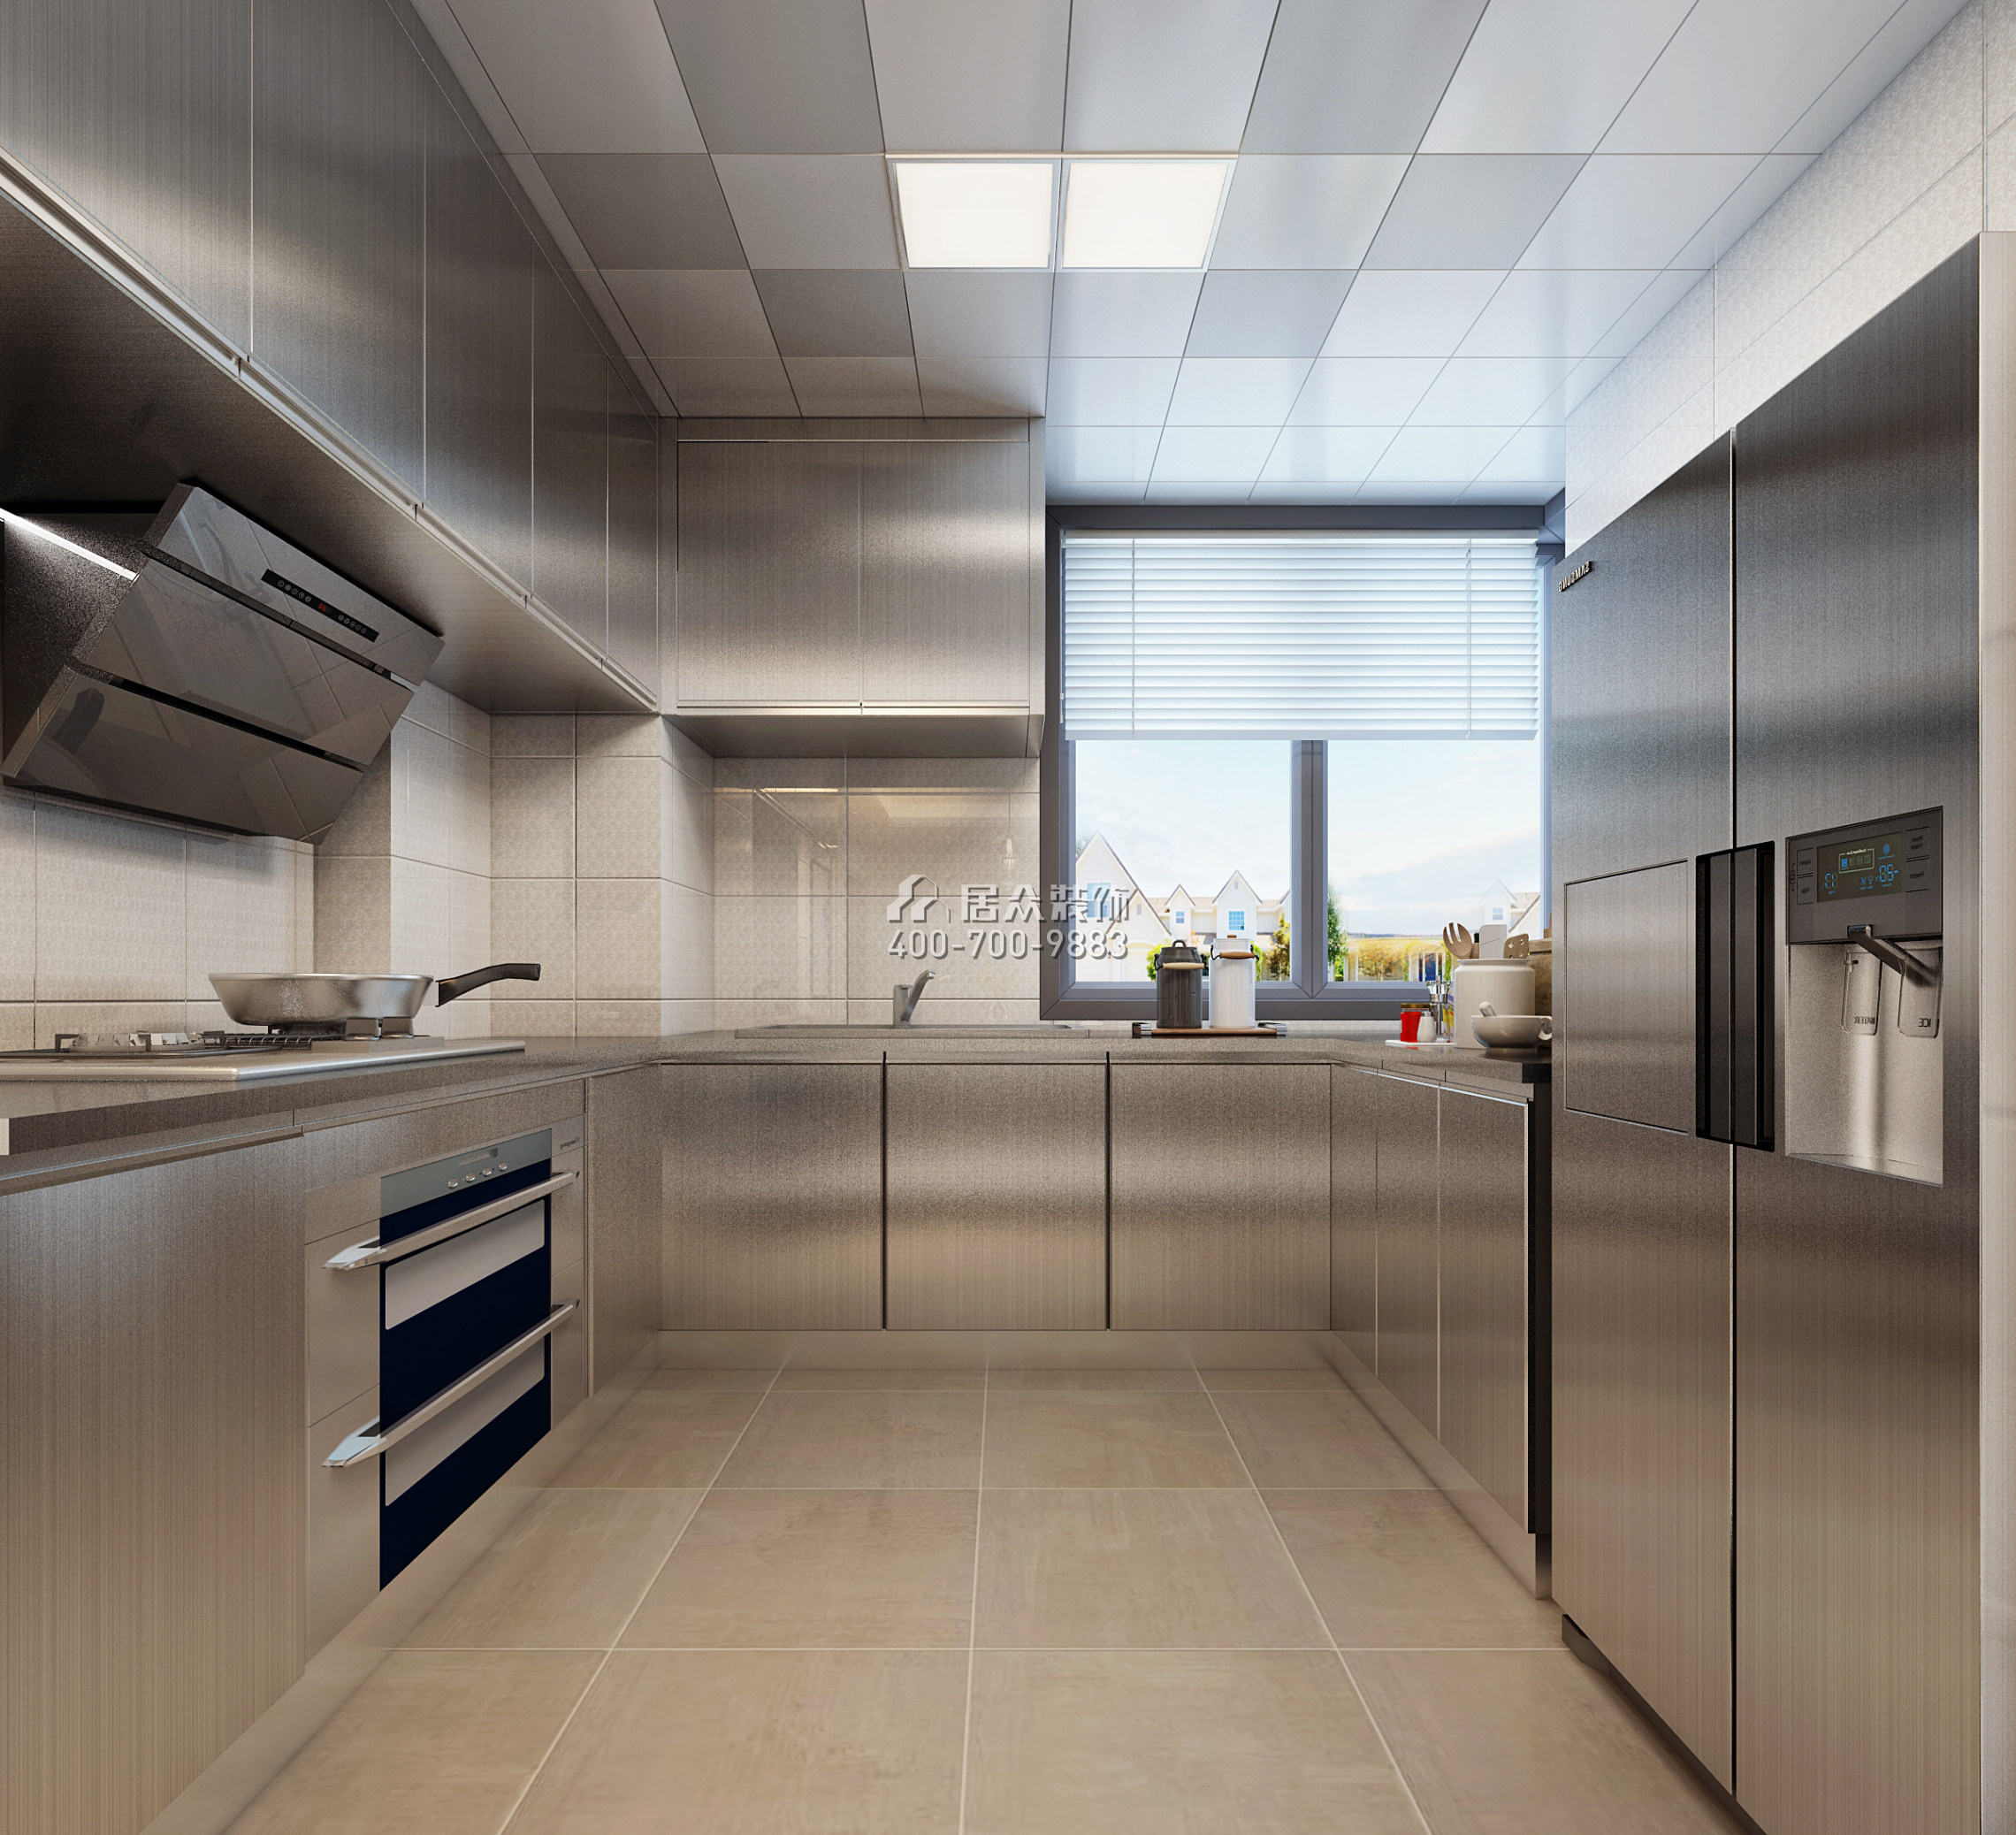 中駿藍灣悅庭110平方米現代簡約風格平層戶型廚房裝修效果圖